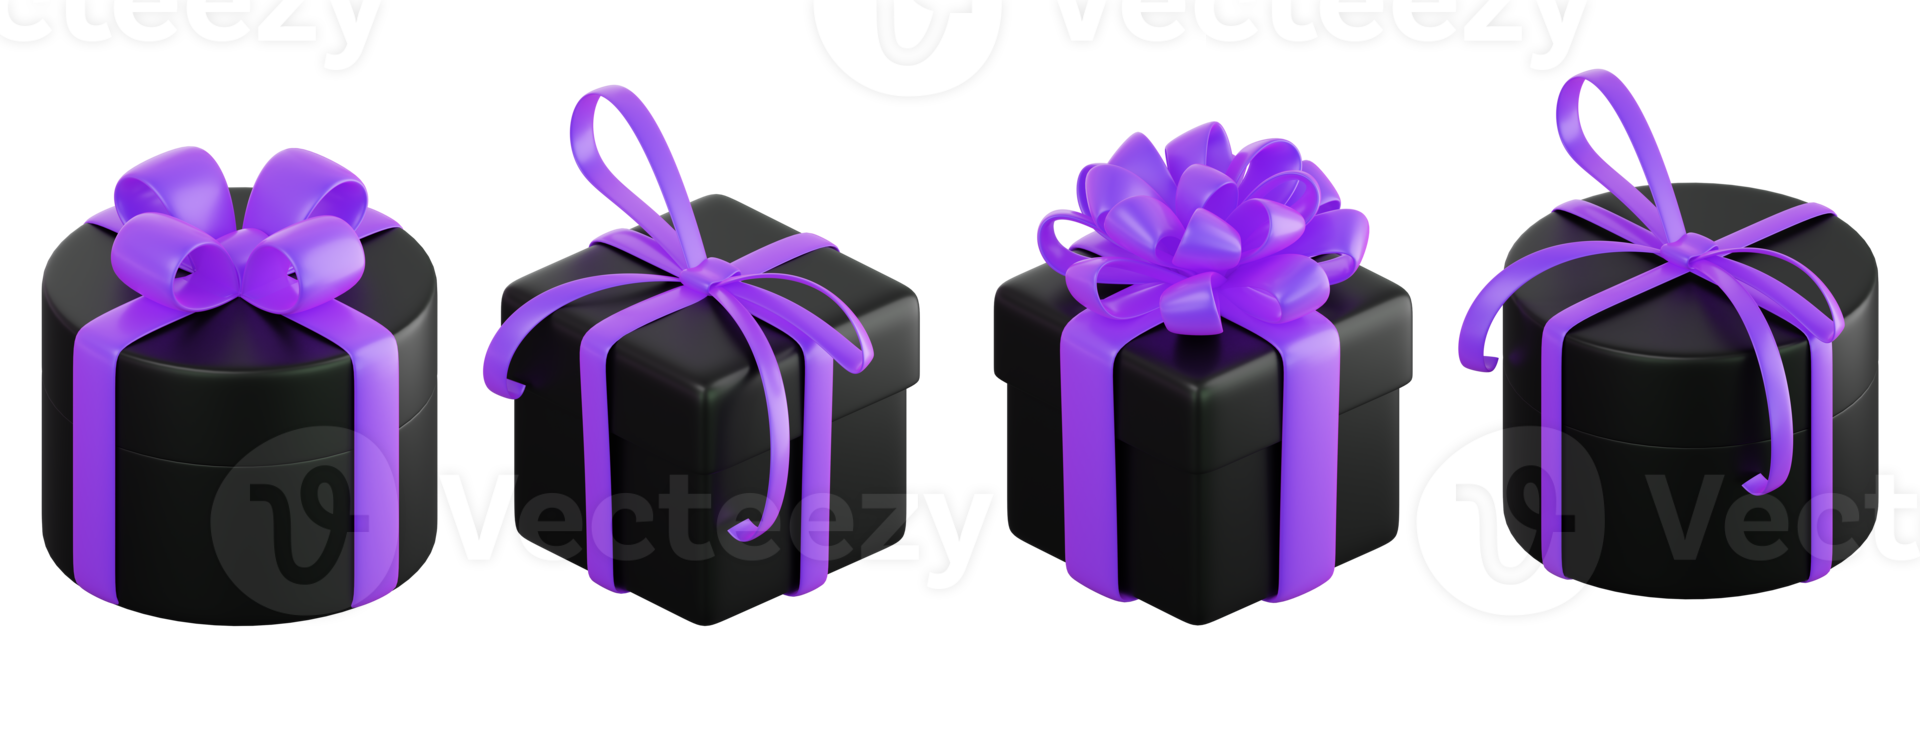 realistisches schwarzes geschenkboxset mit violetter oder lila schleife. konzept des abstrakten feiertags-, geburtstags-, weihnachts- oder schwarzen freitagsgeschenks oder der überraschung. 3d hochwertiges isoliertes rendern png